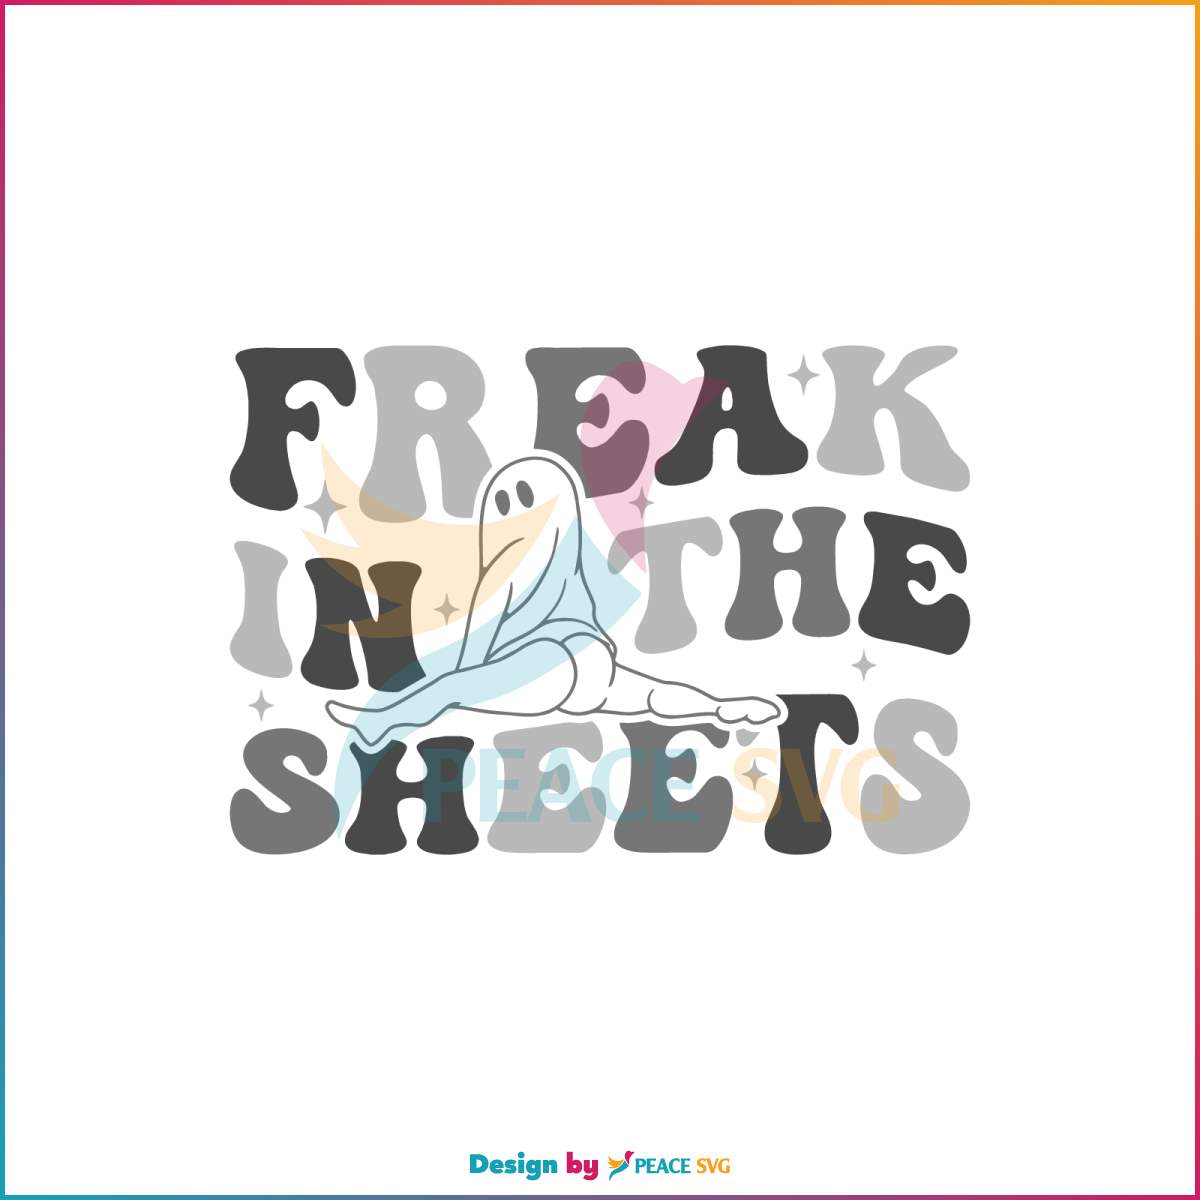 freak-in-the-sheets-funny-halloween-spooky-season-svg-file